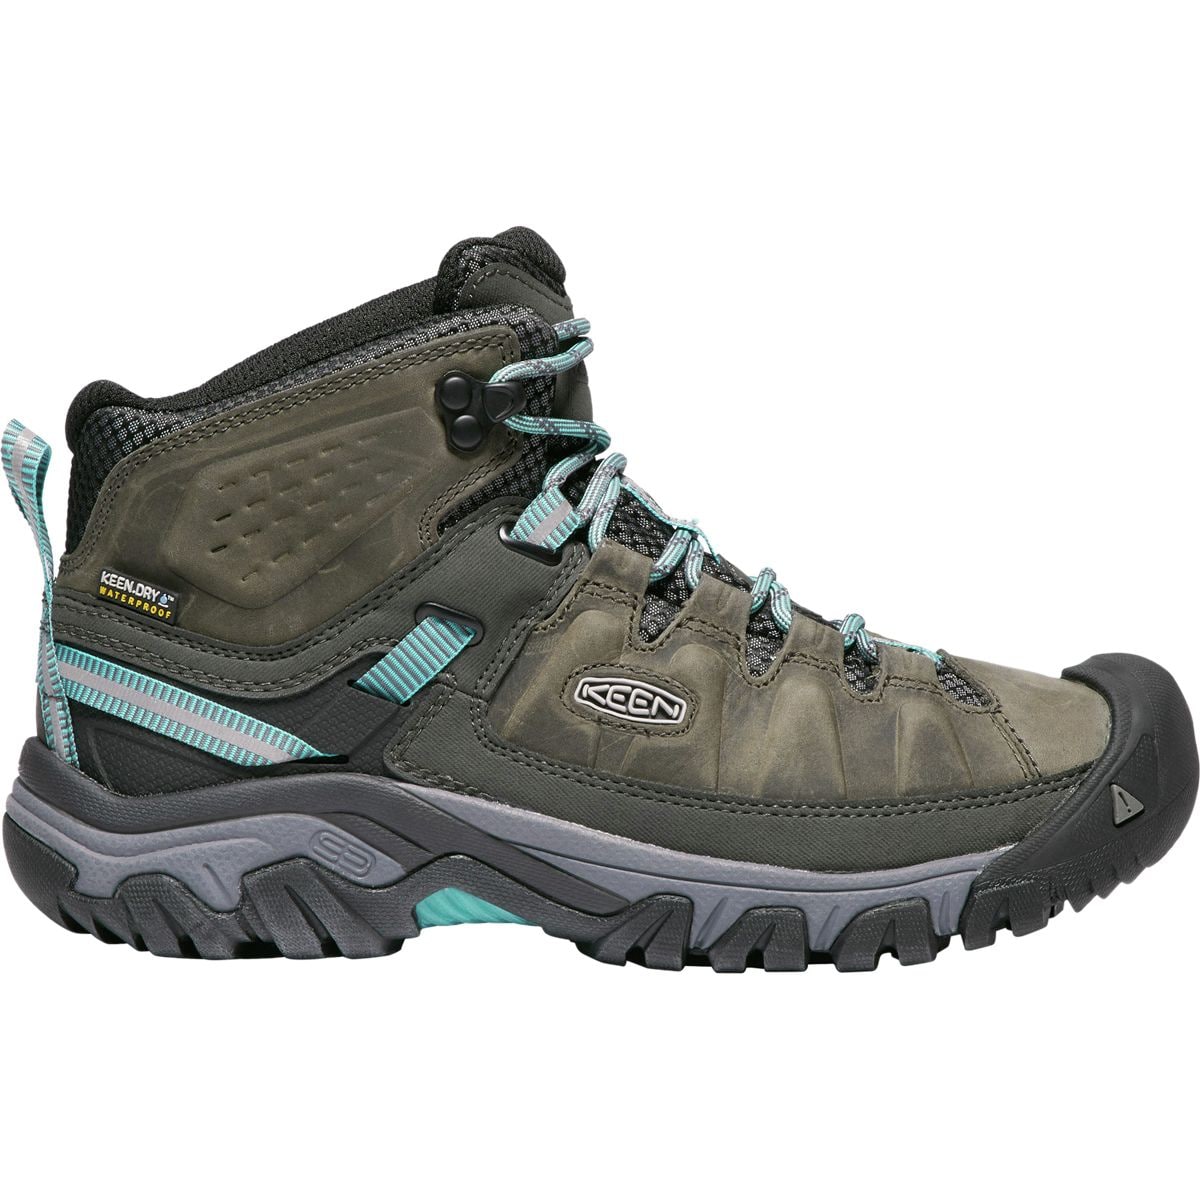 KEEN Targhee III Mid Waterproof Hiking Boot - Women's Alcatraz/Blue Turquoise 10.0